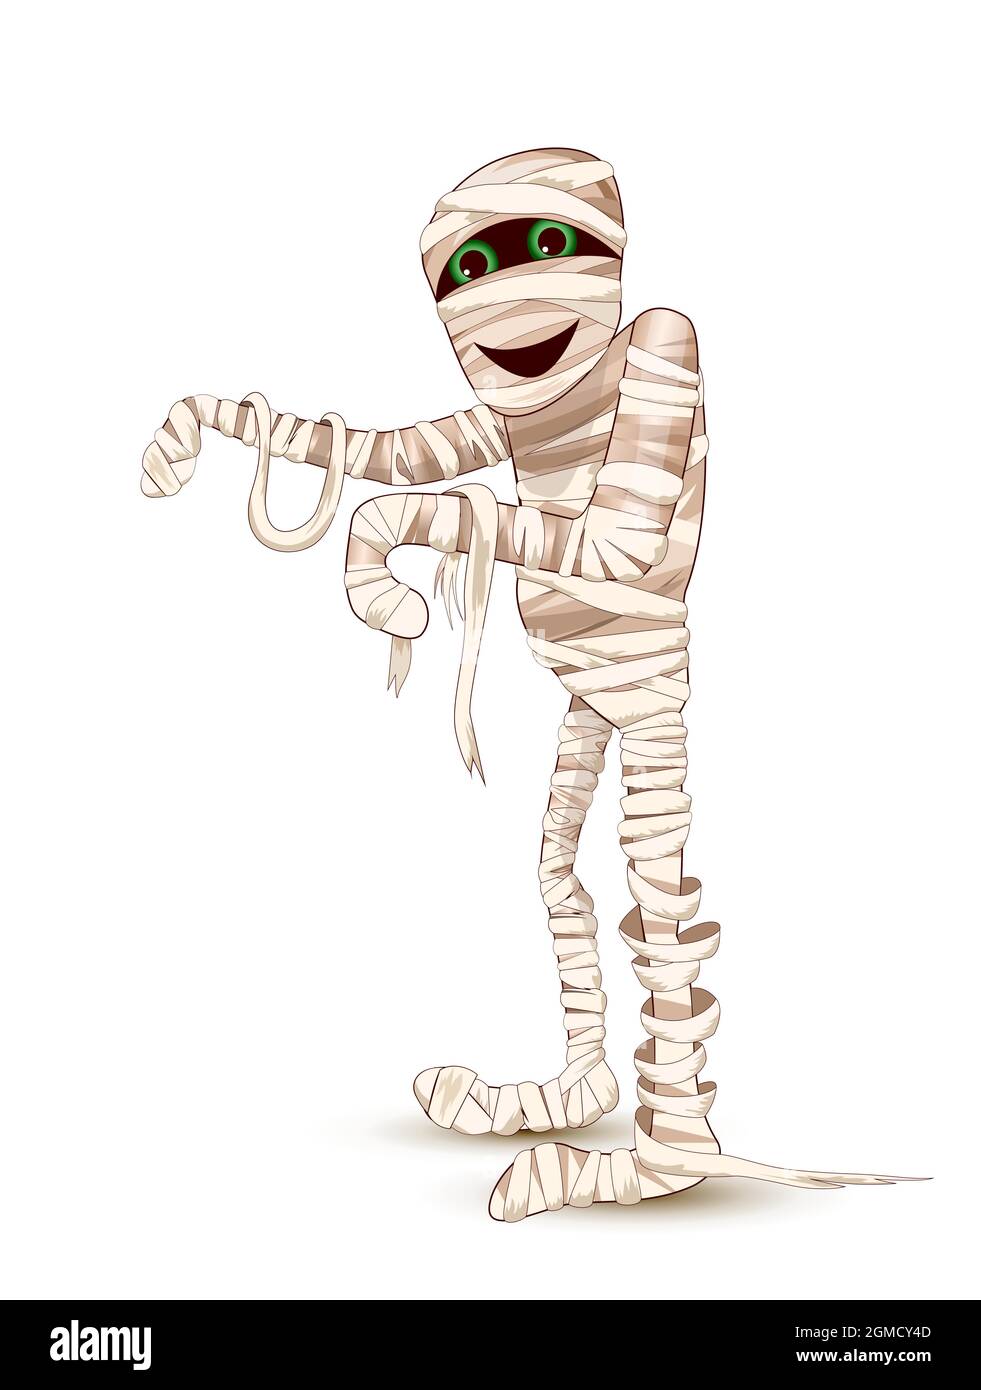 Die Cartoon-Mumie geht, die Arme nach vorne gestreckt. Charakter für den Feiertag Halloween. Weißer Hintergrund. Stock Vektor